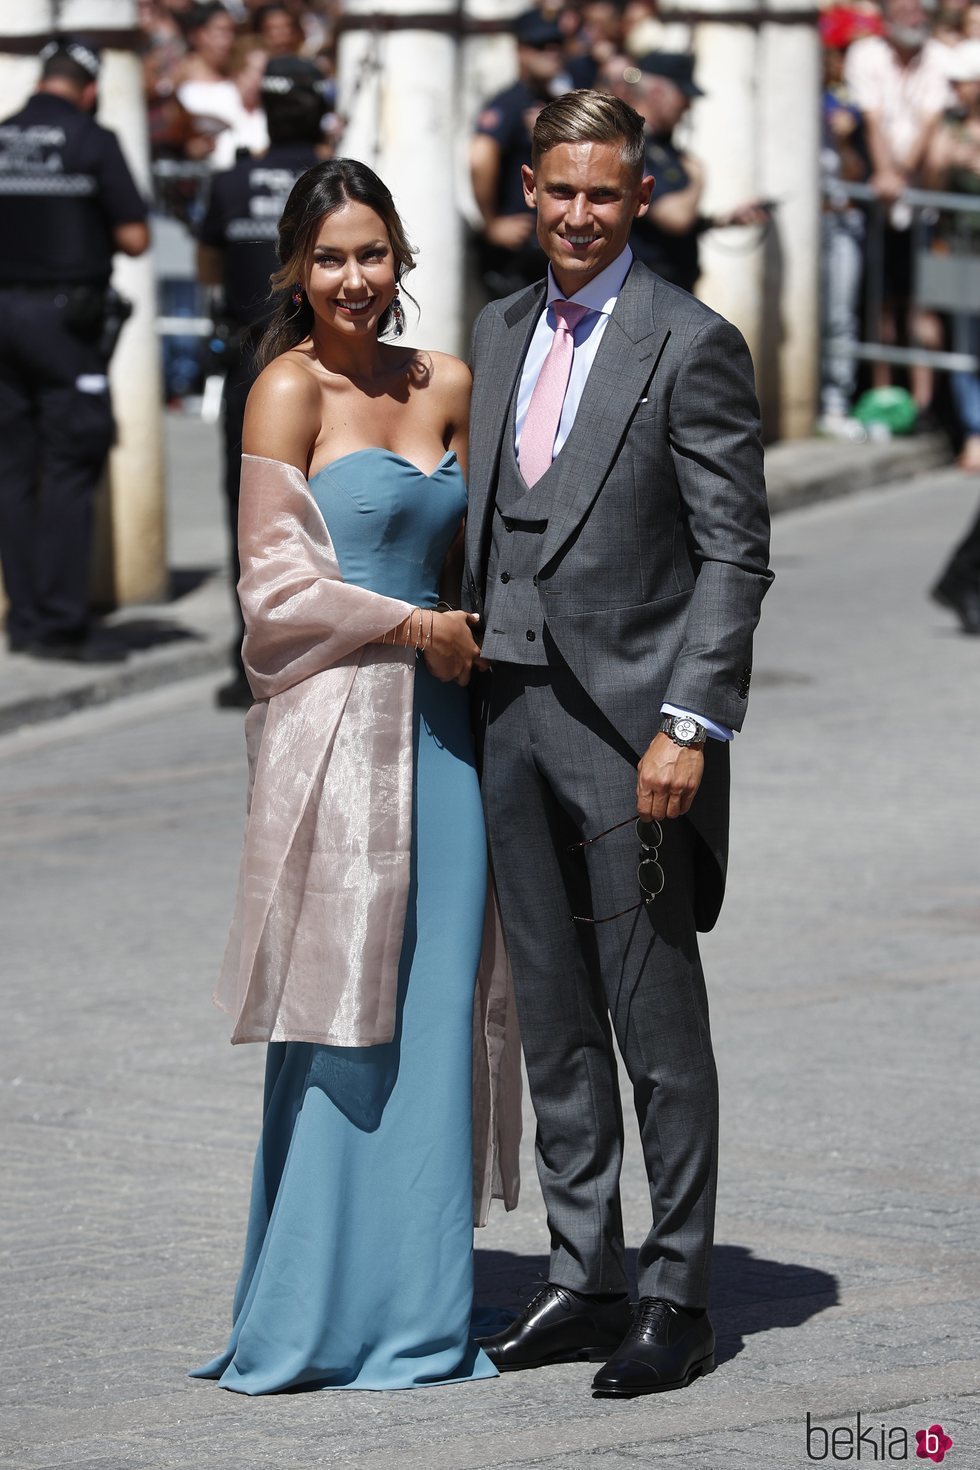 Marco Llorente y Patricia Noarbe a su llegada a la boda de Pilar Rubio y Sergio Ramos